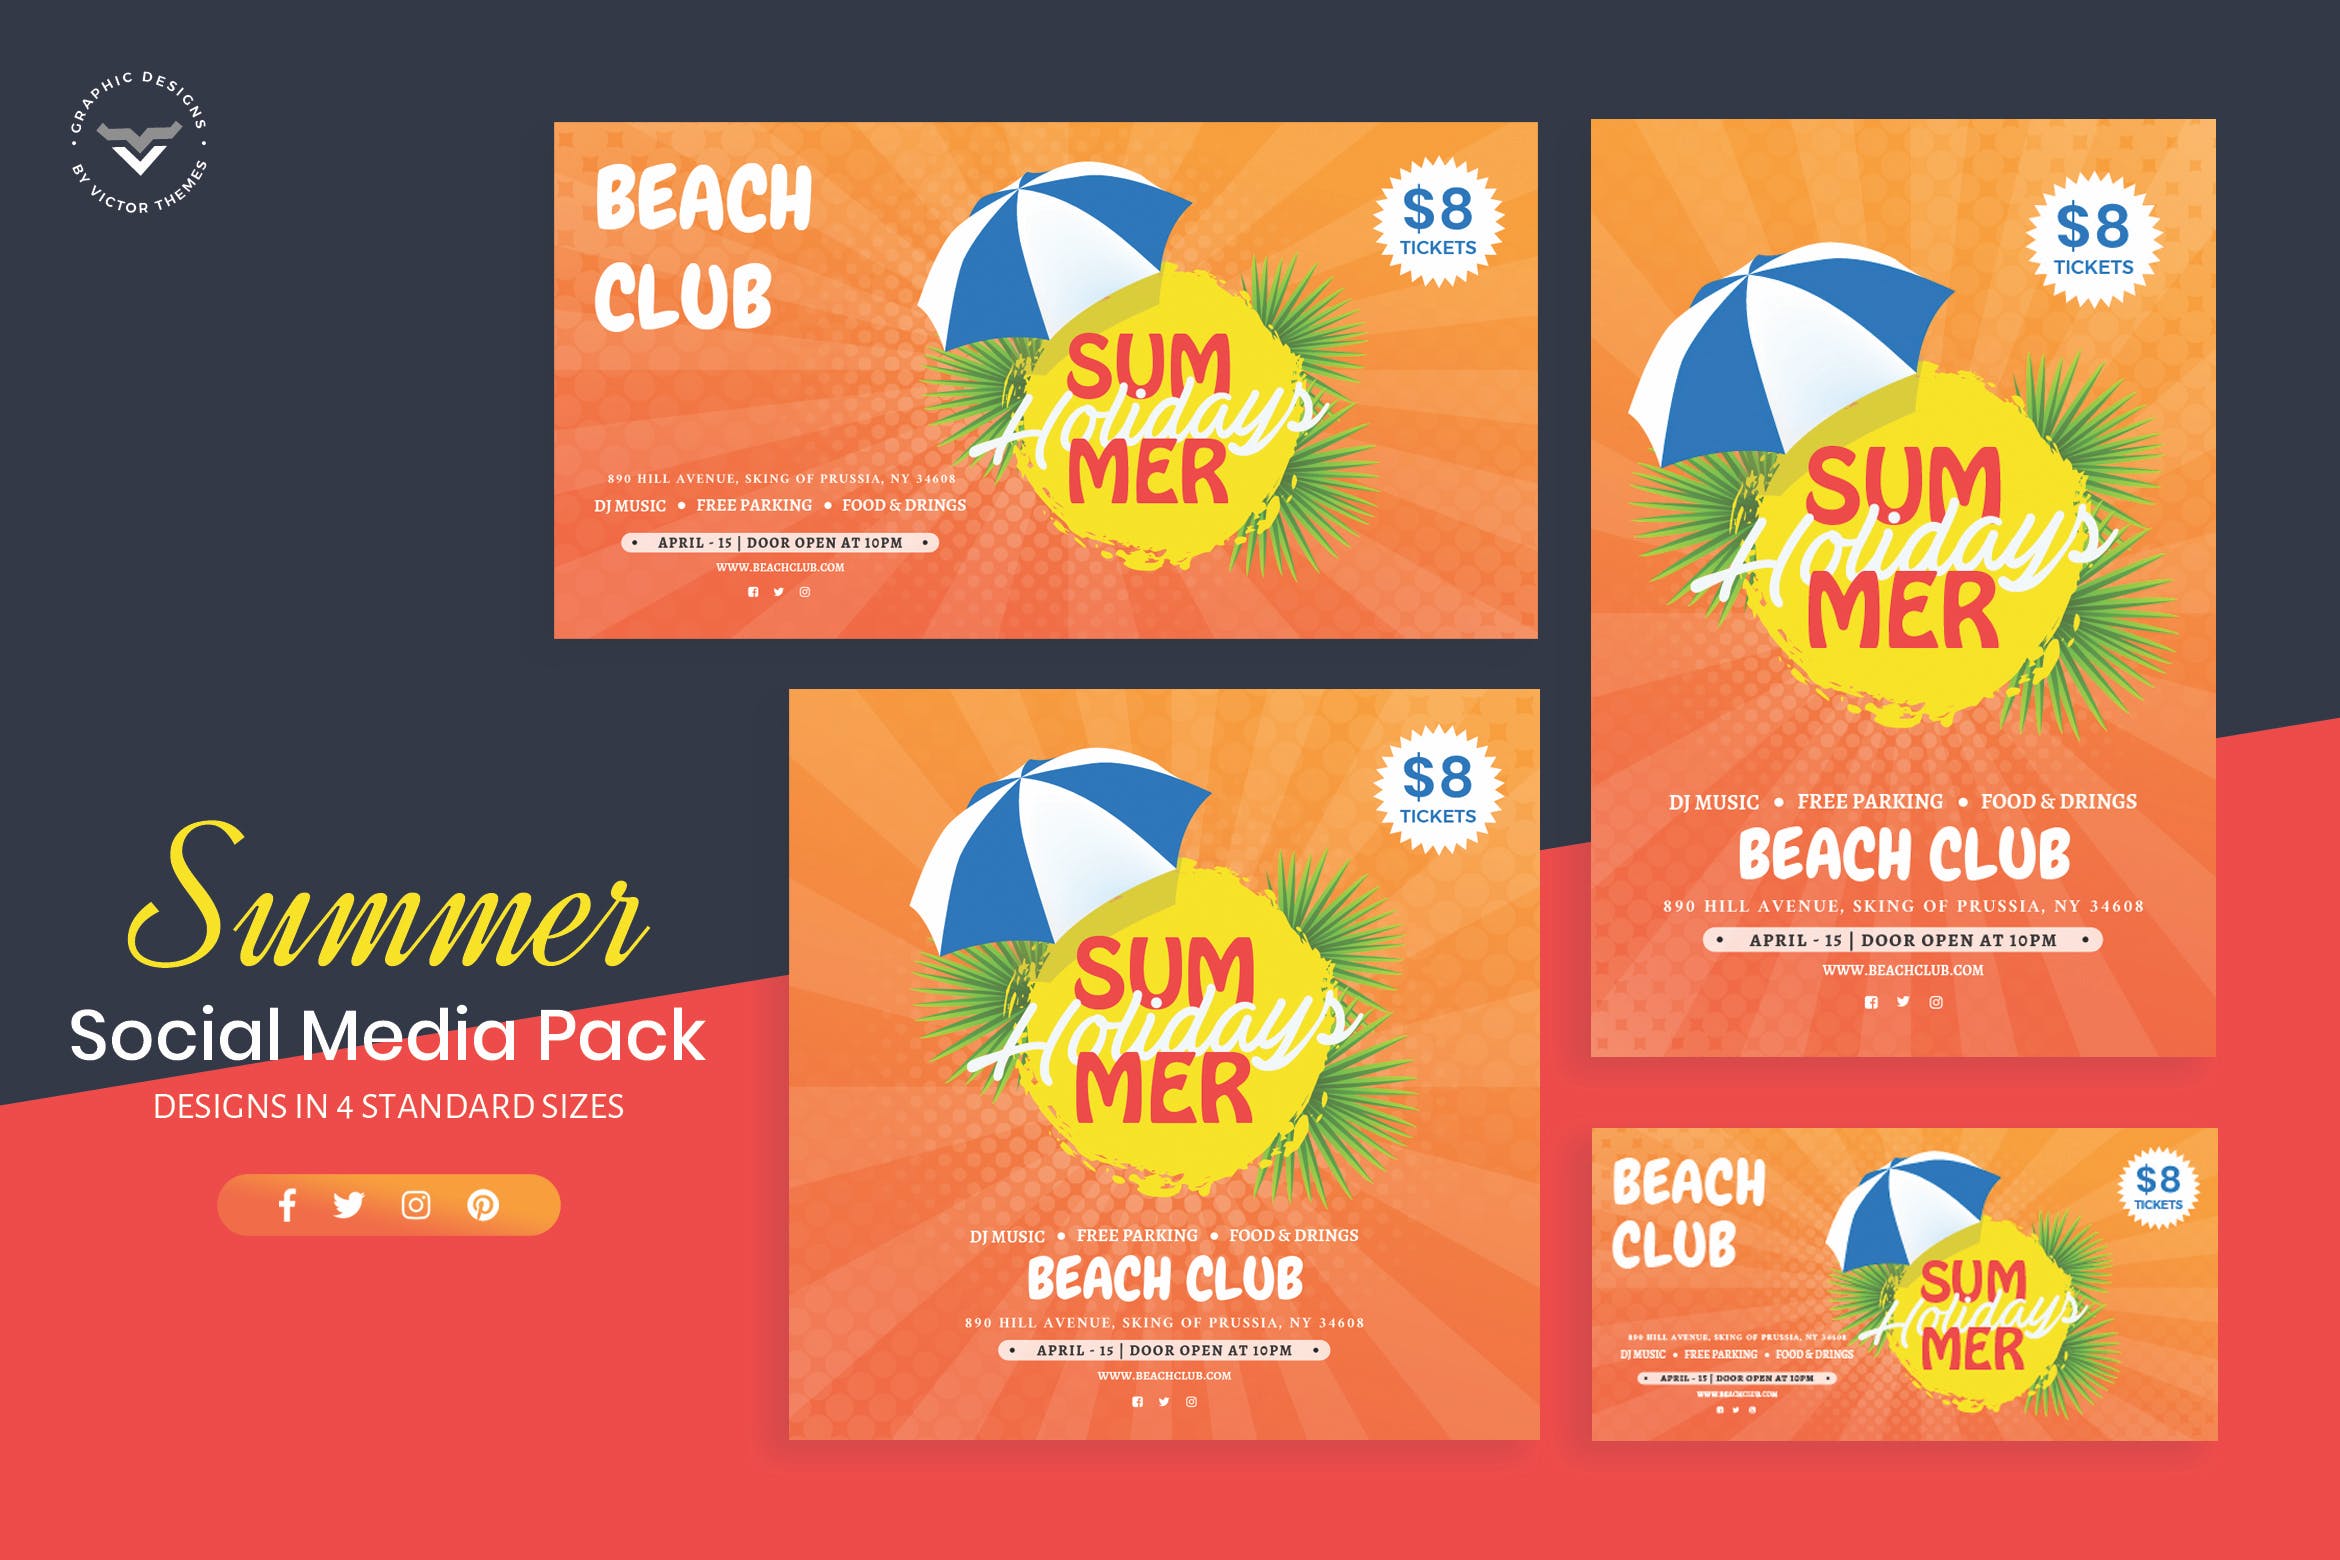 夏日主题社交媒体广告设计模板16图库精选 Summer Social Media Template插图